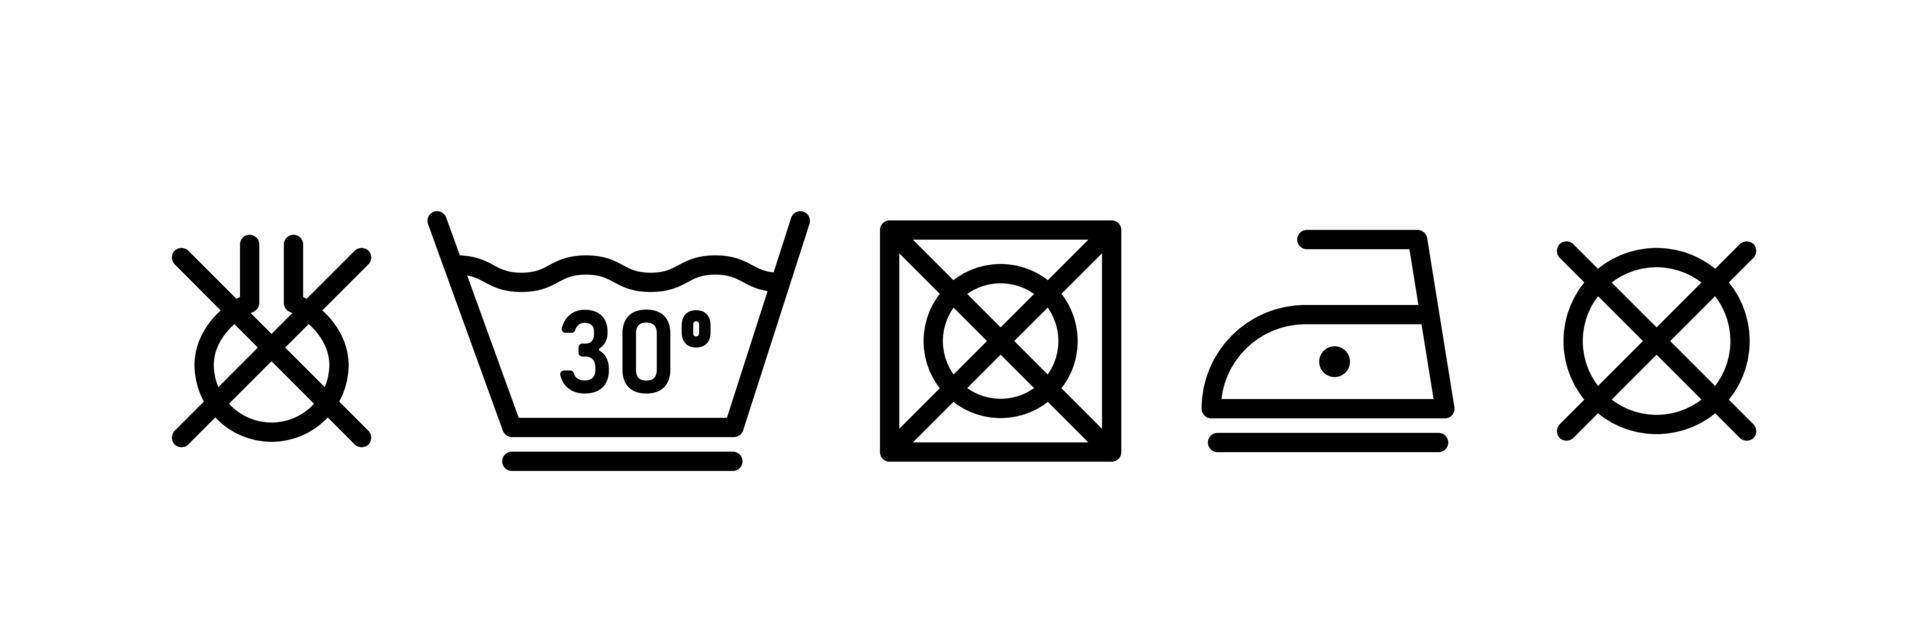 tvätt linje ikonuppsättning. symbol för att tvätta kläder. vektor illustration